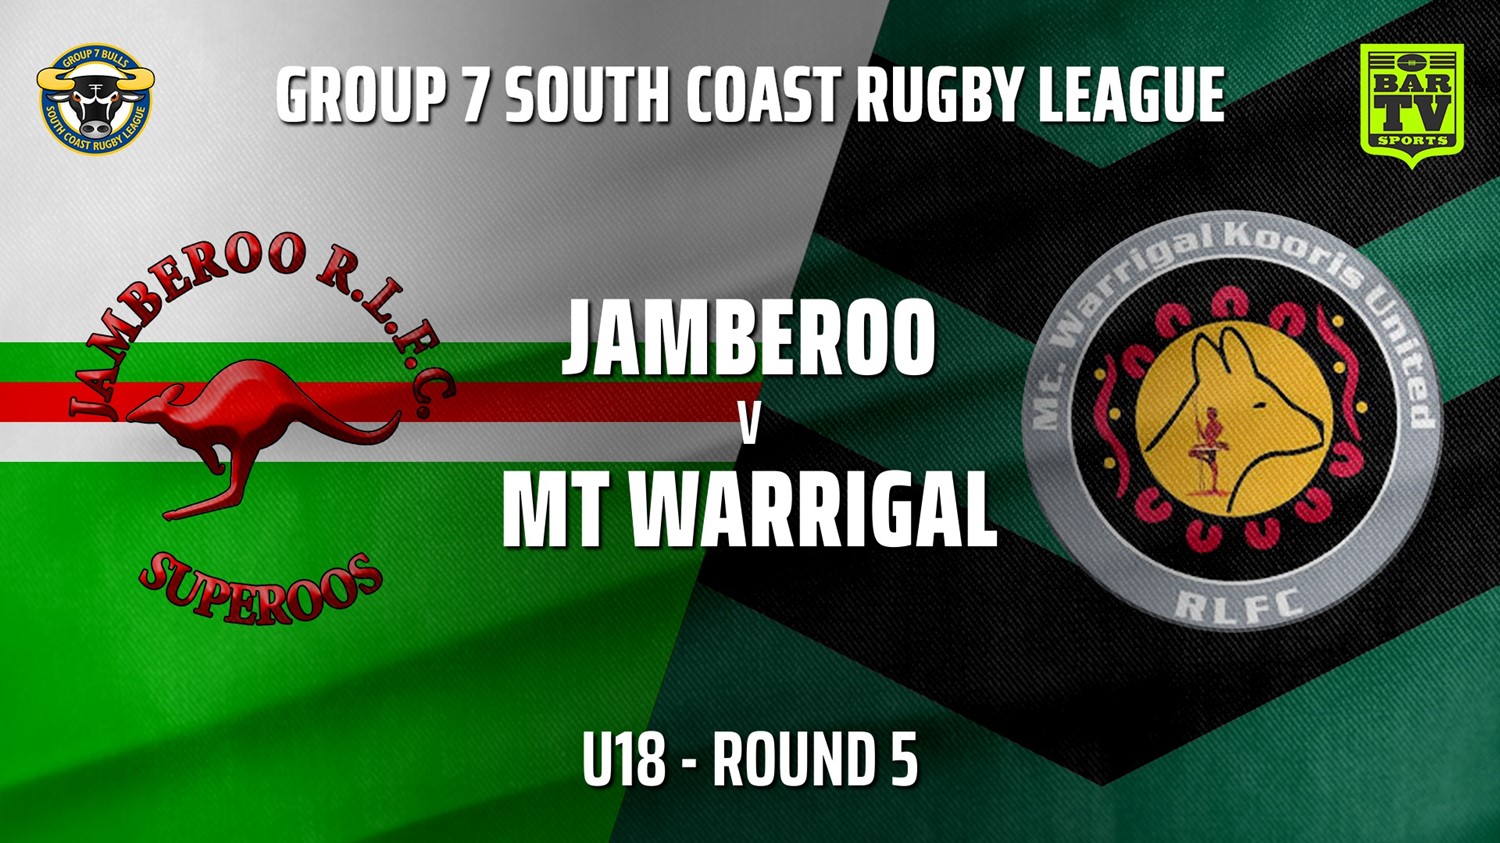 210515-Group 7 RL Round 5 - U18 - Jamberoo v Mt Warrigal Kooris Slate Image